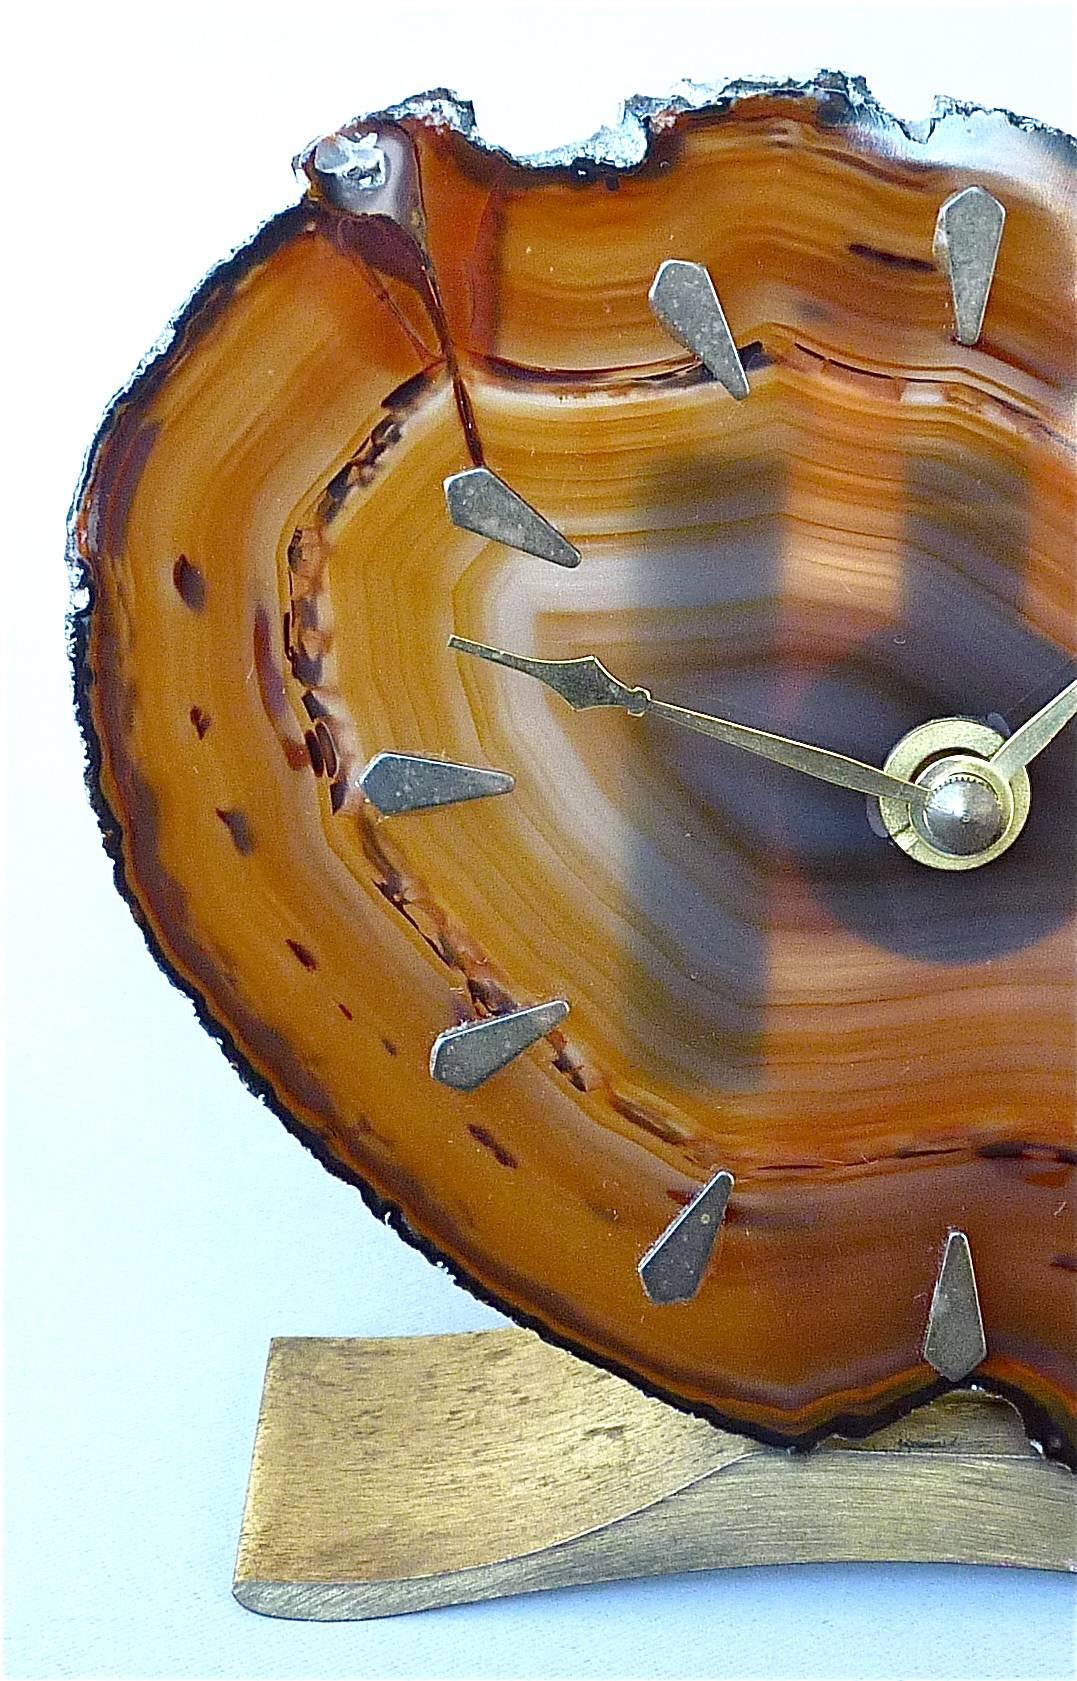 Magnifique horloge de table sophistiquée à attribution Willy Daros, Belgique et Allemagne, vers les années 1970. Elle possède une belle face en agate (pierre polie) de couleur ambre à miel avec des repères de 12 heures en laiton, montée sur une base